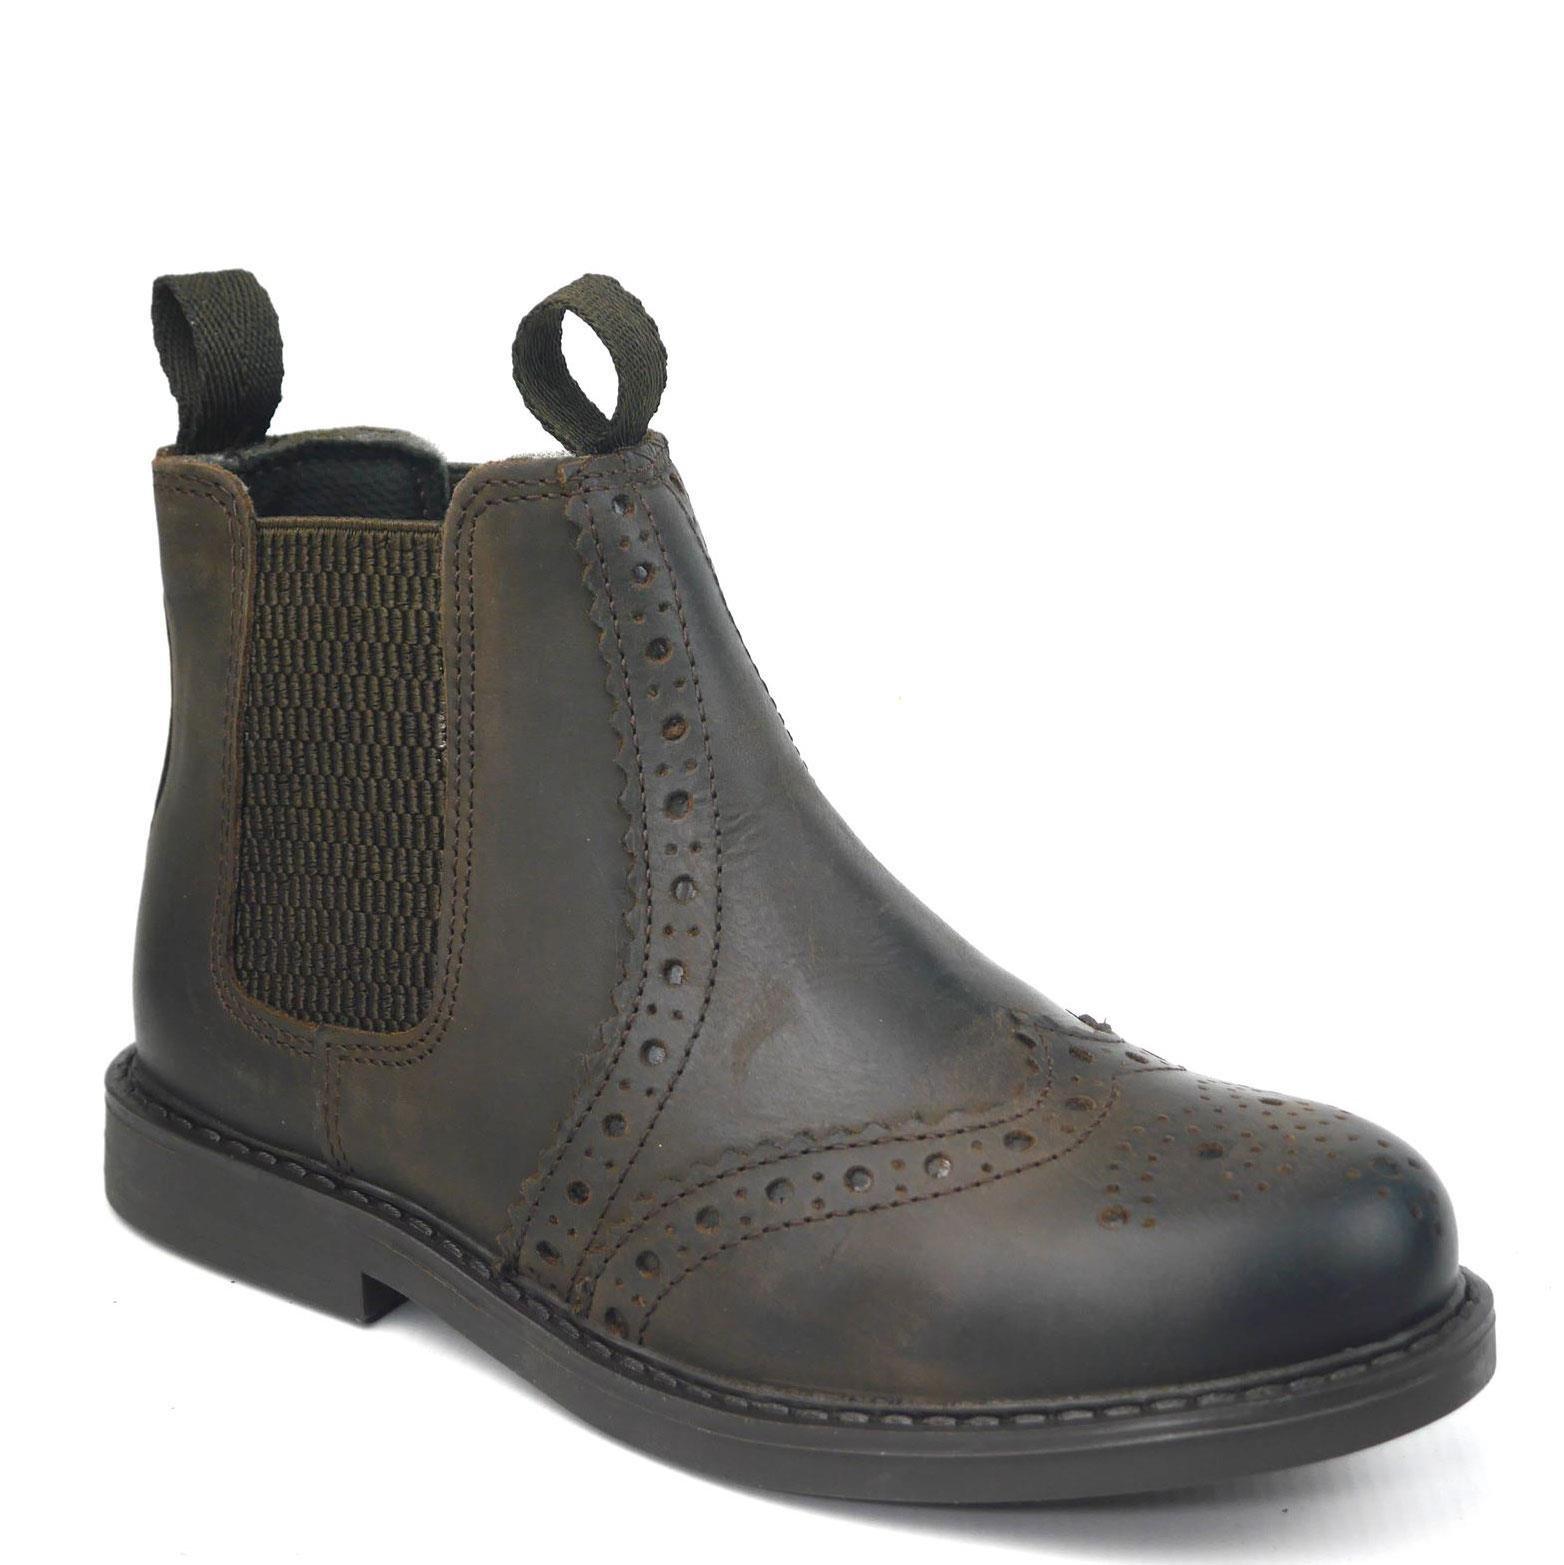 Кожаные ботинки челси с эффектом броги Cheltenham Frank James, коричневый кожаные туфли дерби броги parade frank james коричневый